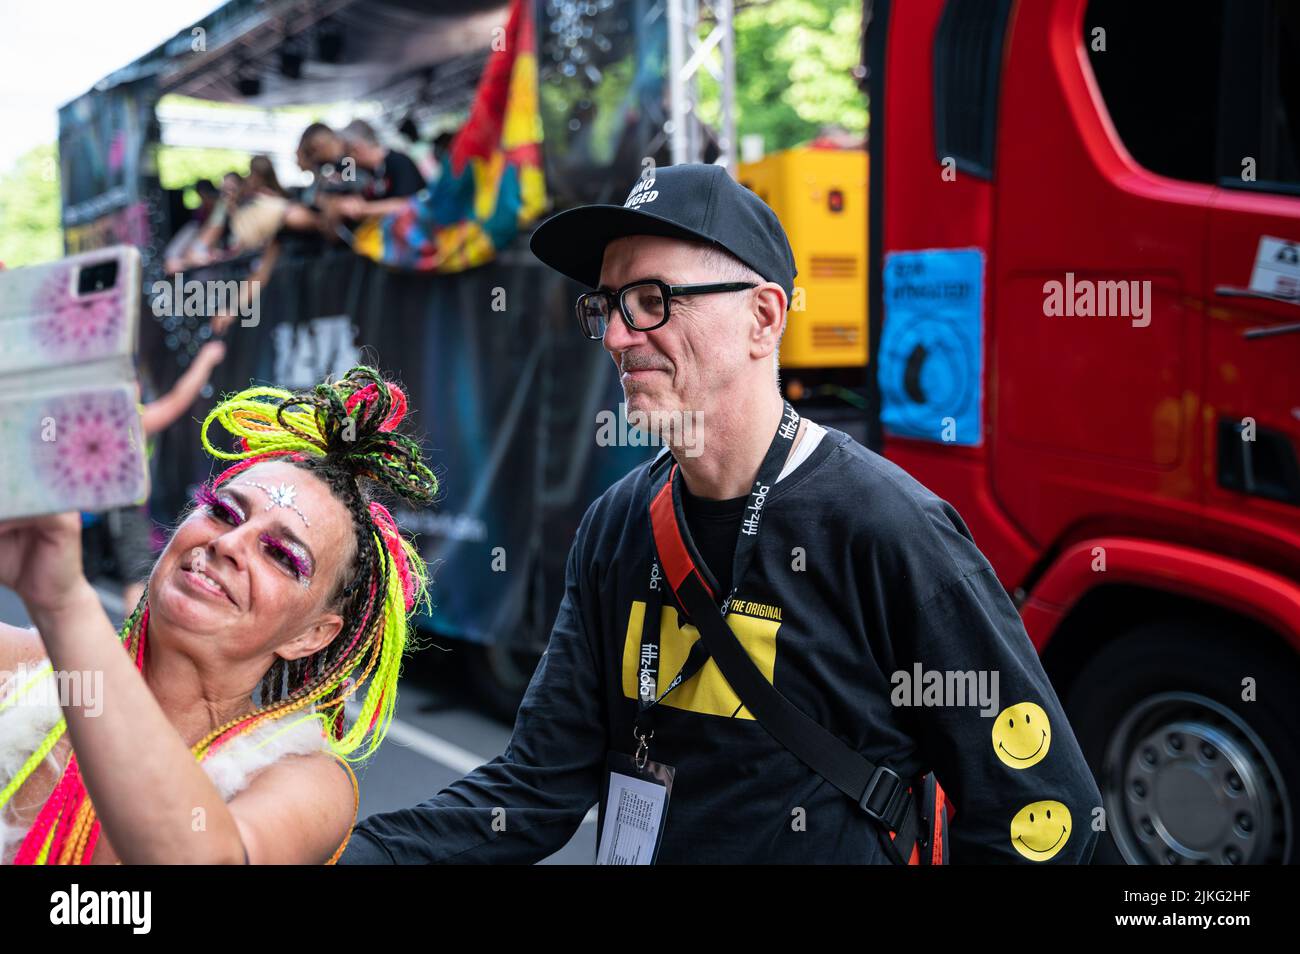 09.07.2022, Alemania, Berlín, Berlín - Europa - Dr. Motte en el desfile Rave el Planeta, el evento sucesor de la Loveparade, el antiguo culto anual Foto de stock